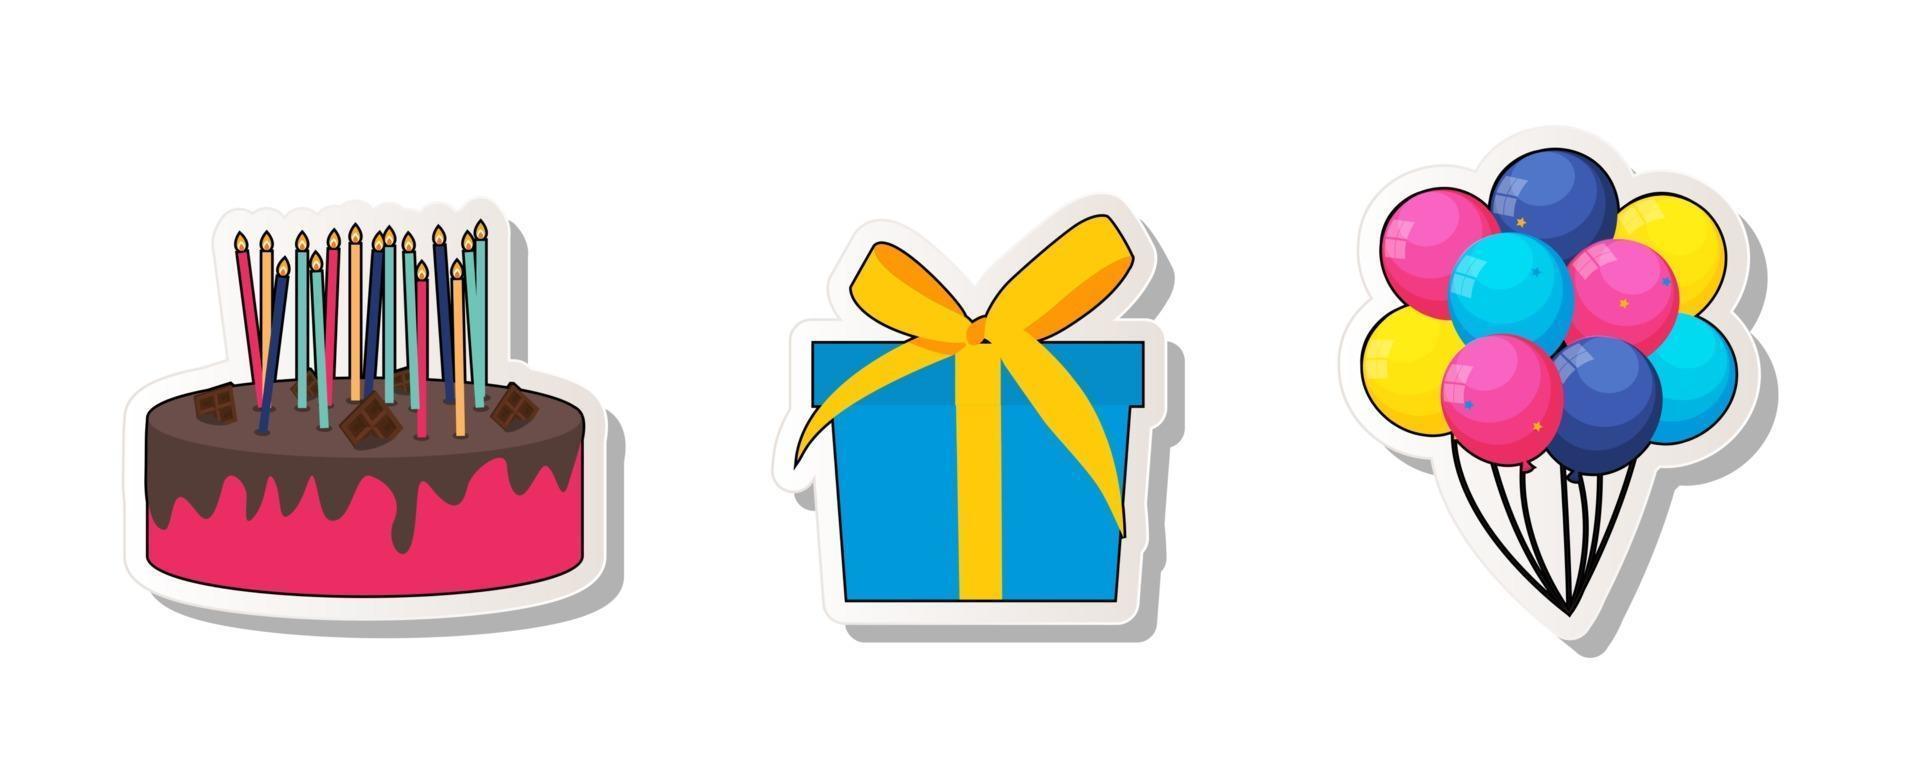 Geburtstagsfeier Aufkleber Sammlung Set Icons mit Kuchen, Luftballons und Geschenkbox. vektor